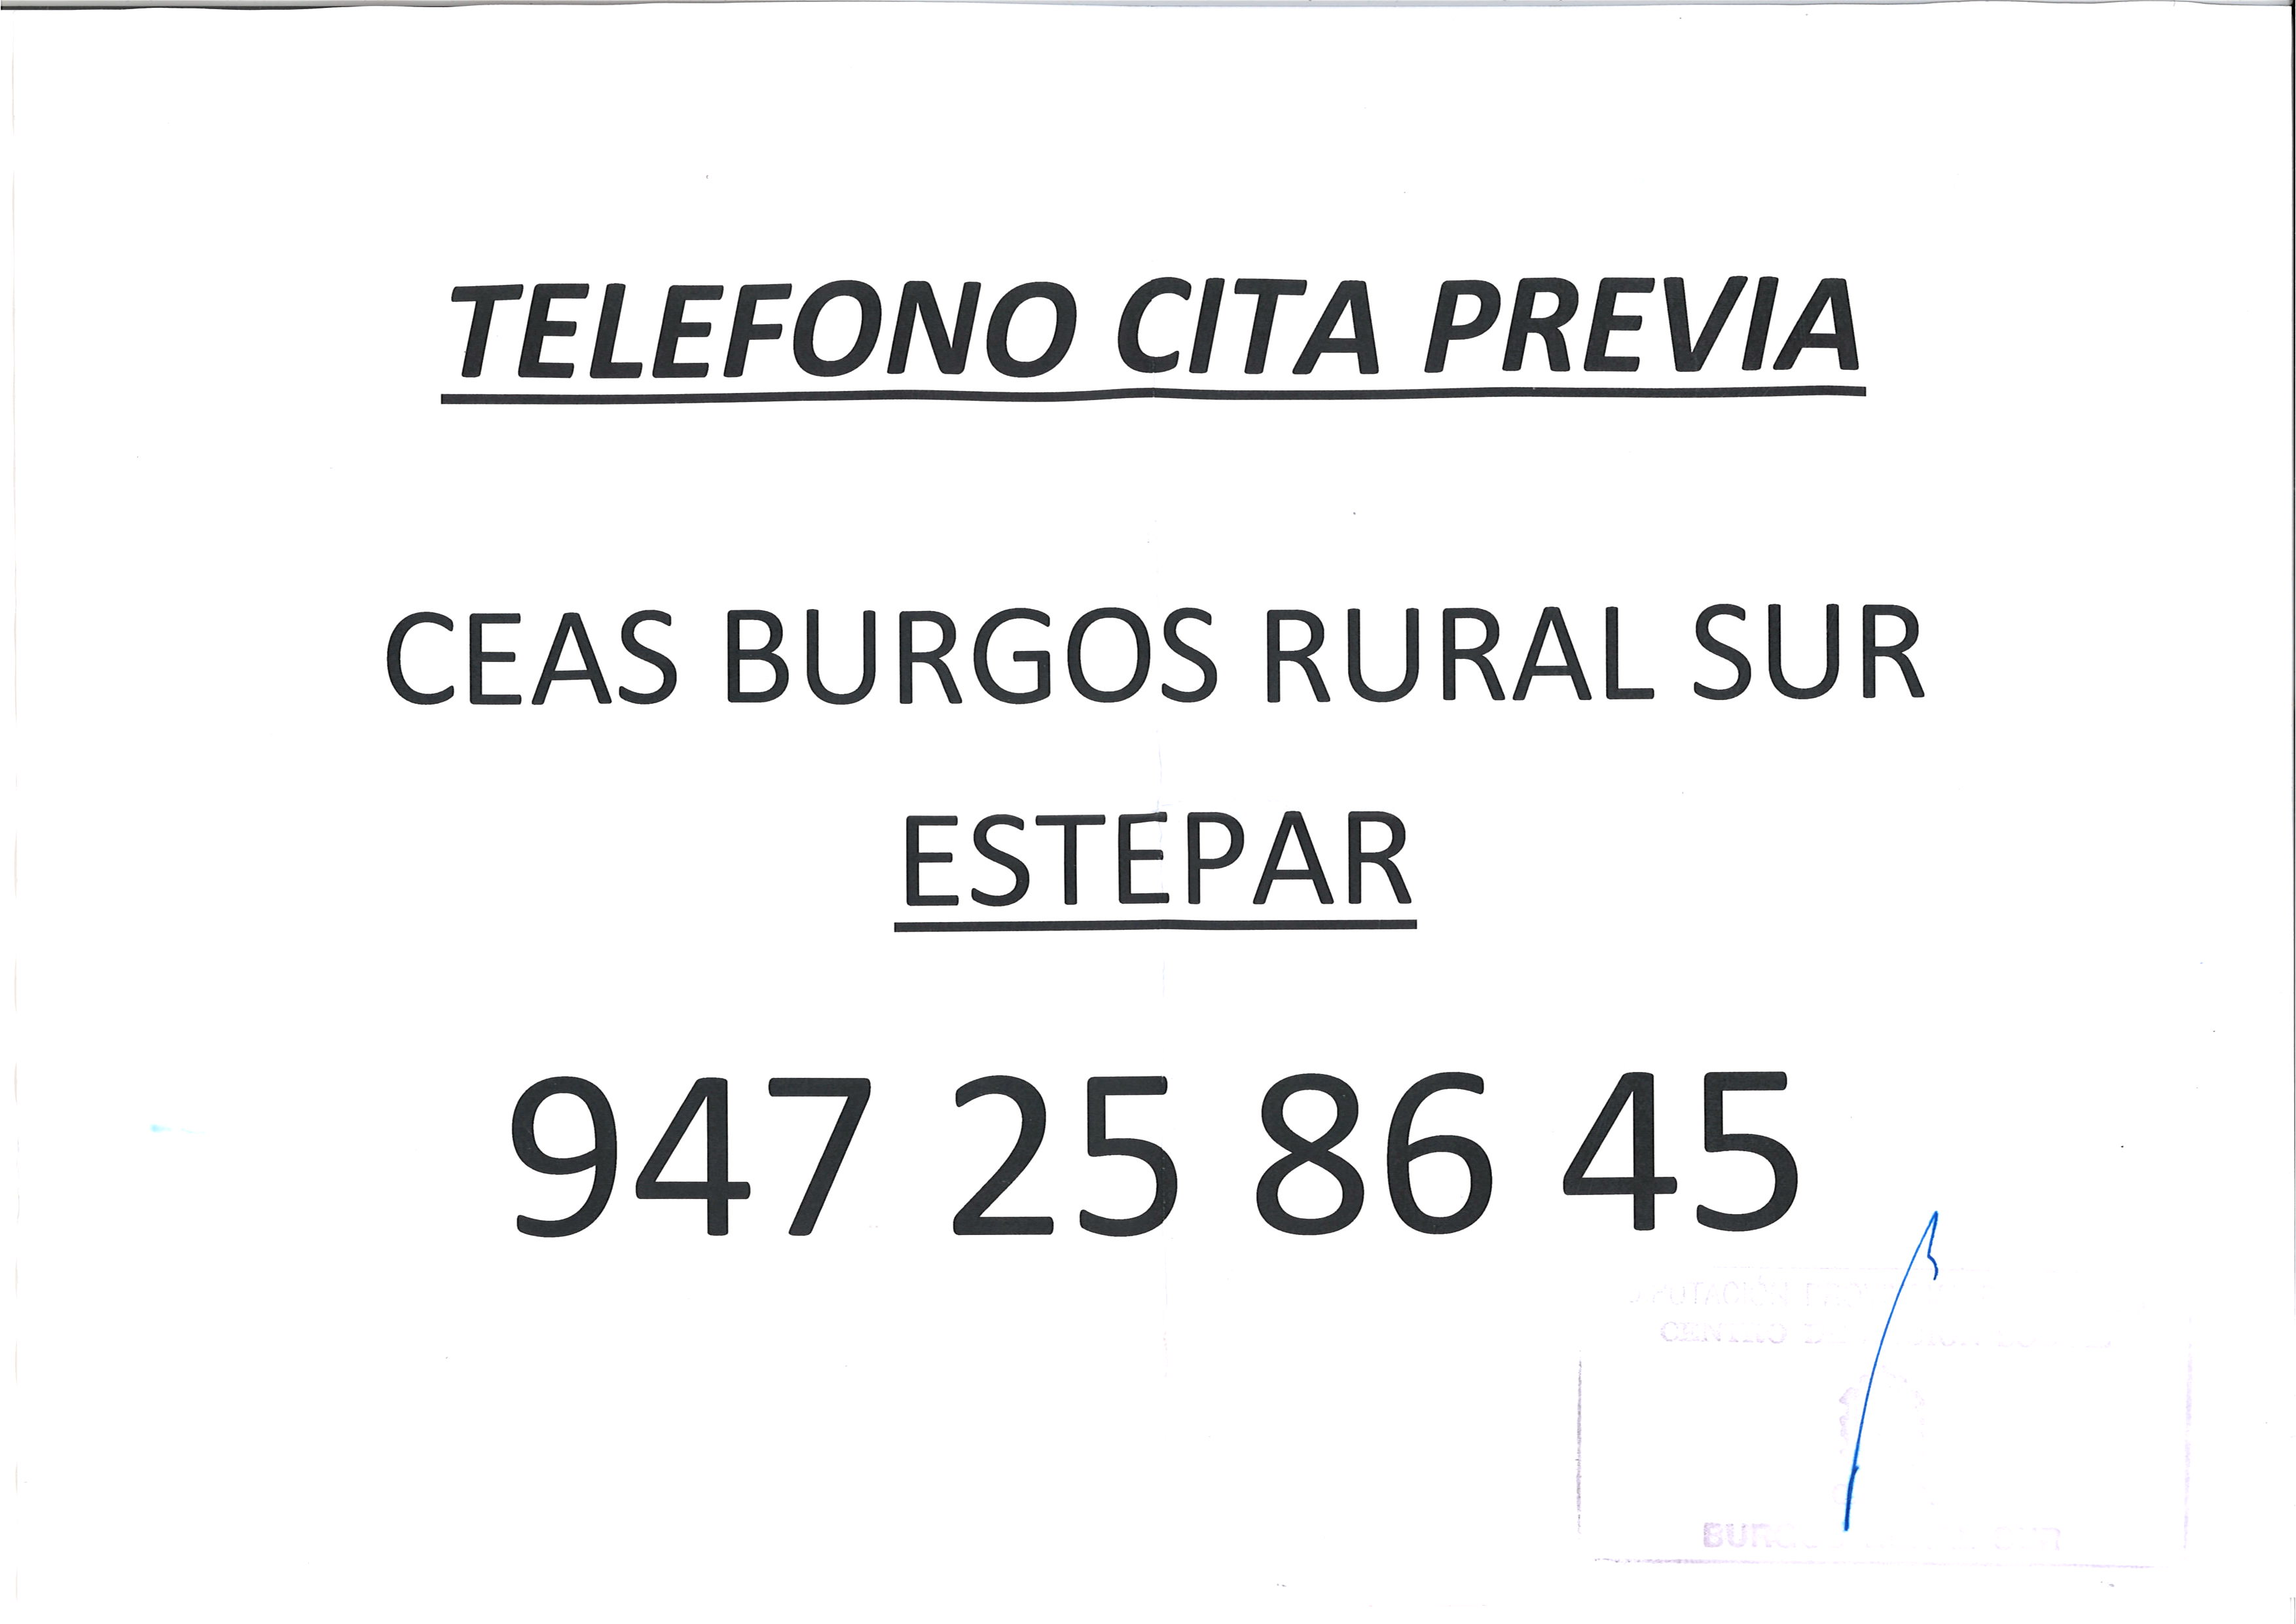 CEAS BURGOS RURAL SUR TELEFONO CITA PREVIA